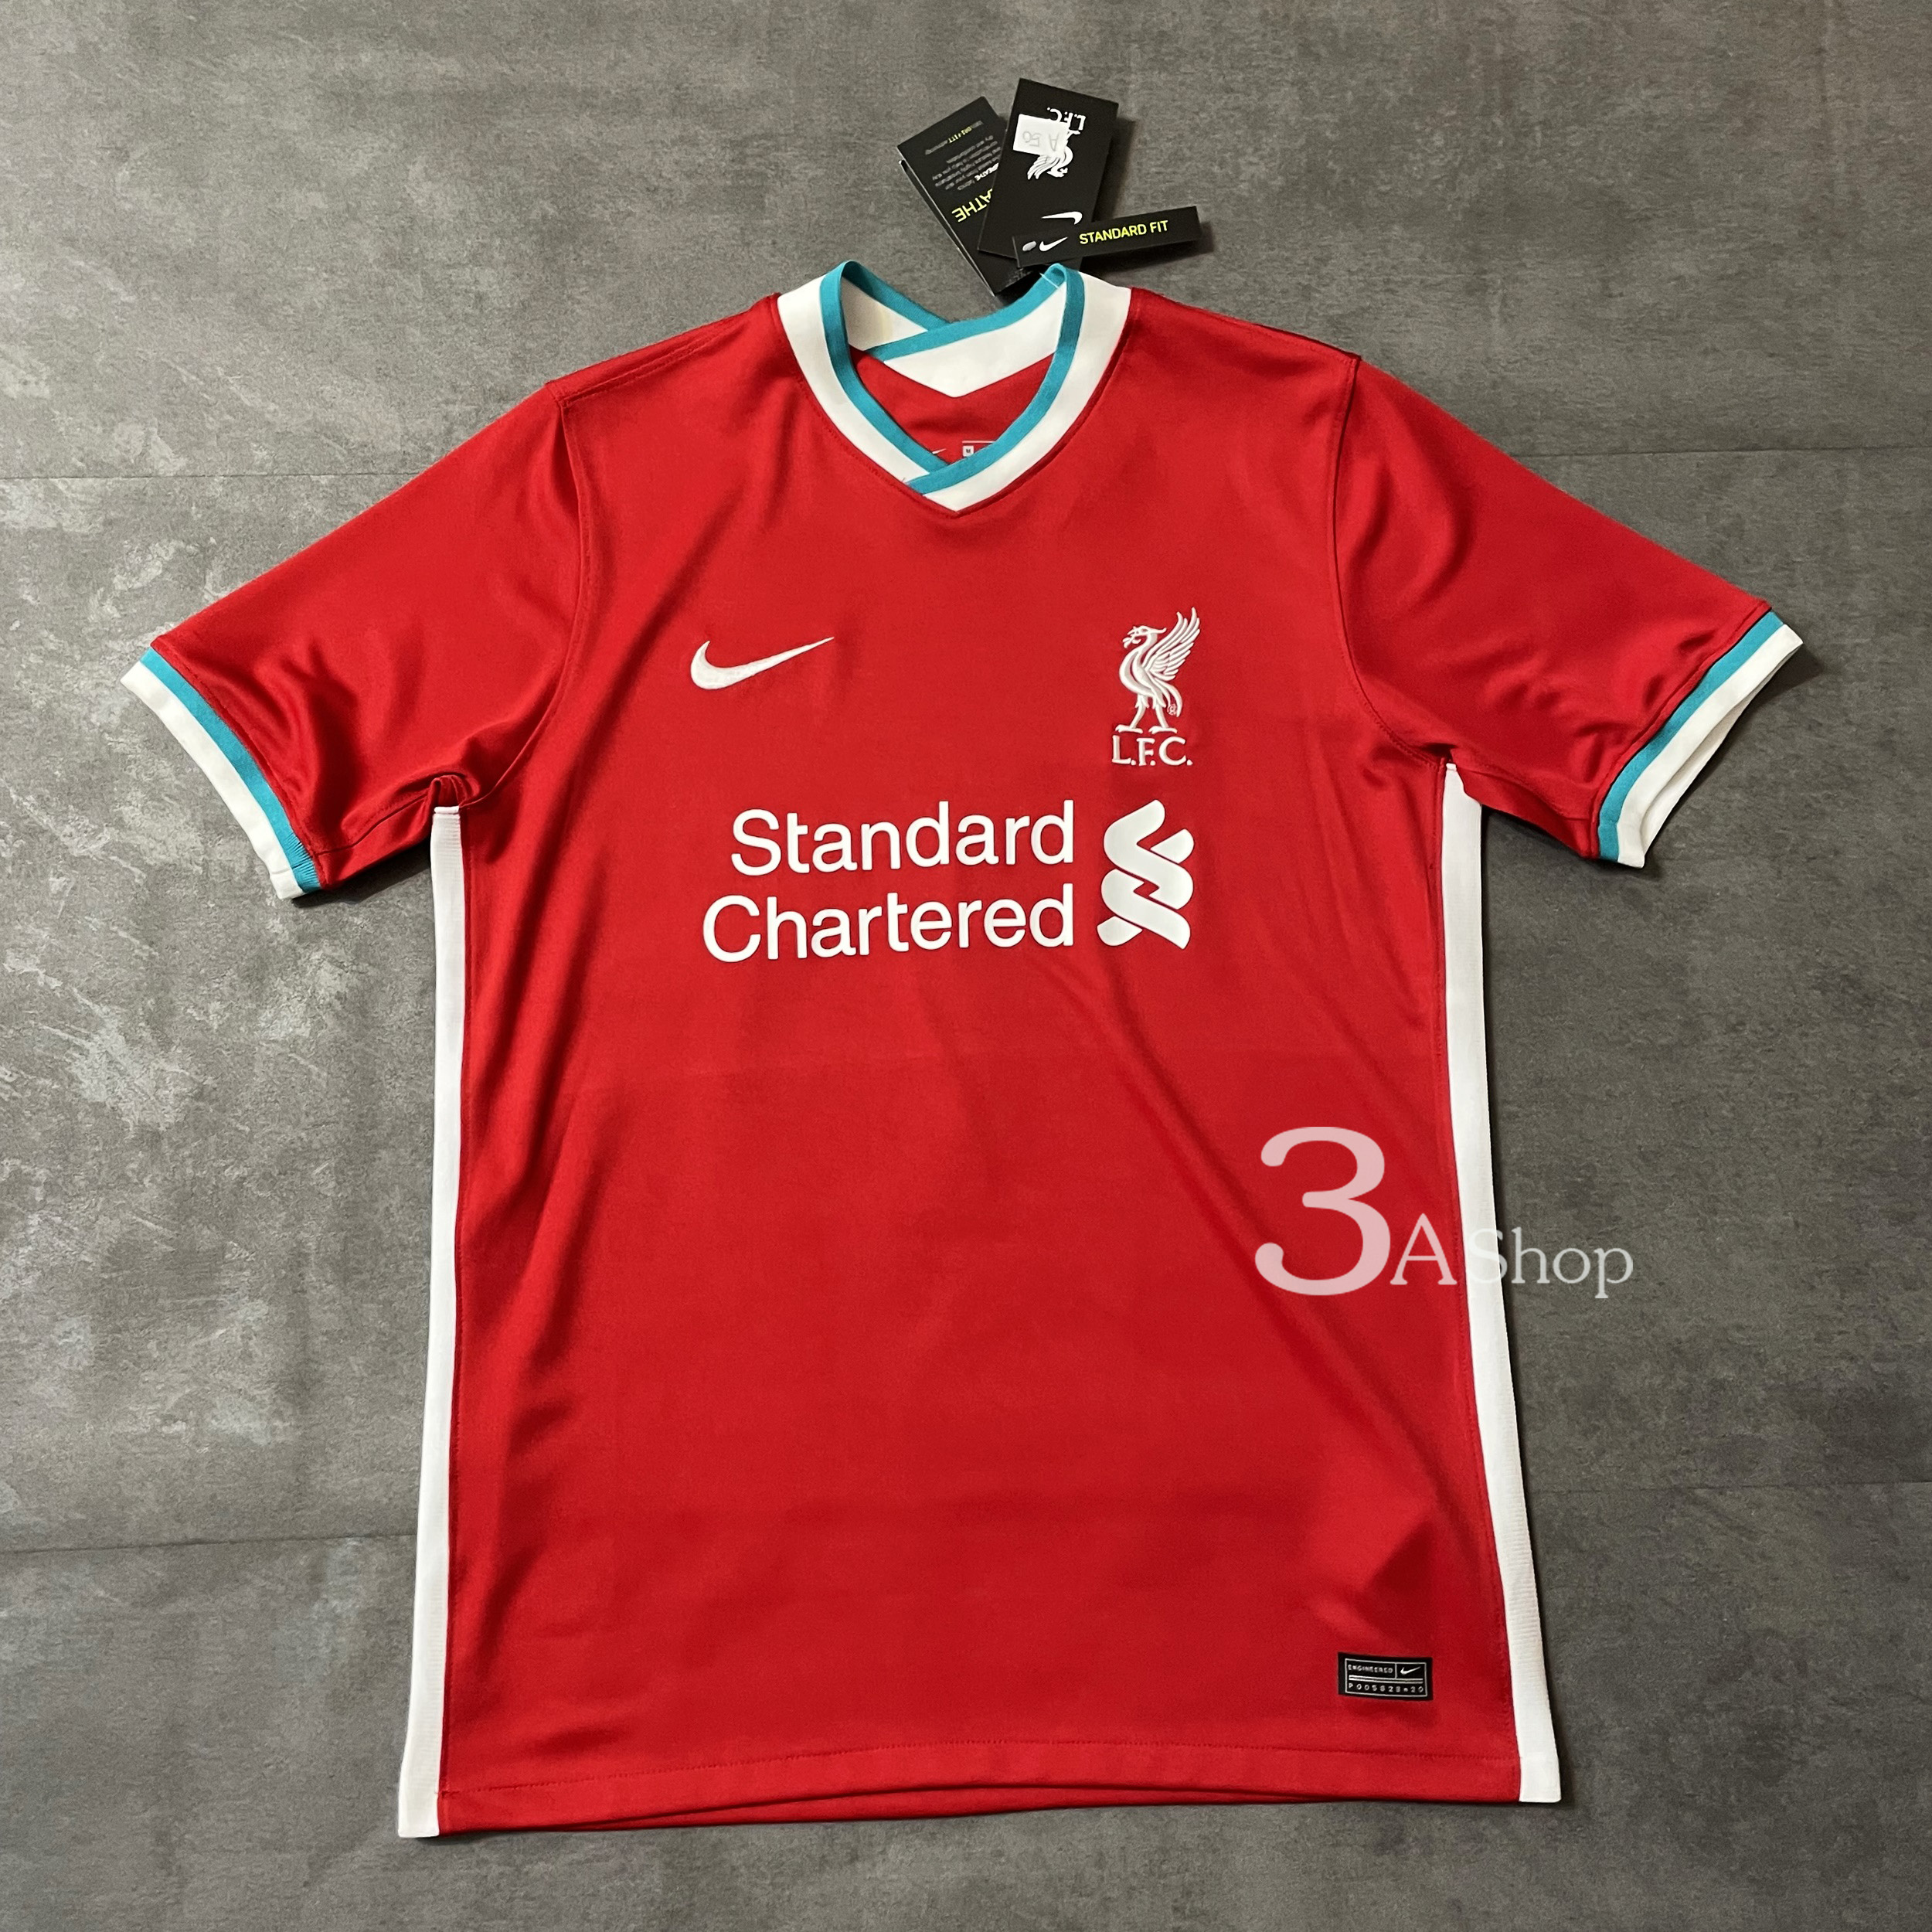 Liverpool 21 FOOTBALL SHIRT SOCCER  เสื้อบอล เสื้อฟุตบอลชาย เสื้อบอลชาย เสื้อฟุตบอล เสื้อกีฬาชาย2021 เสื้อทีมลิเวอร์พลู ปี21 เกรด 3A